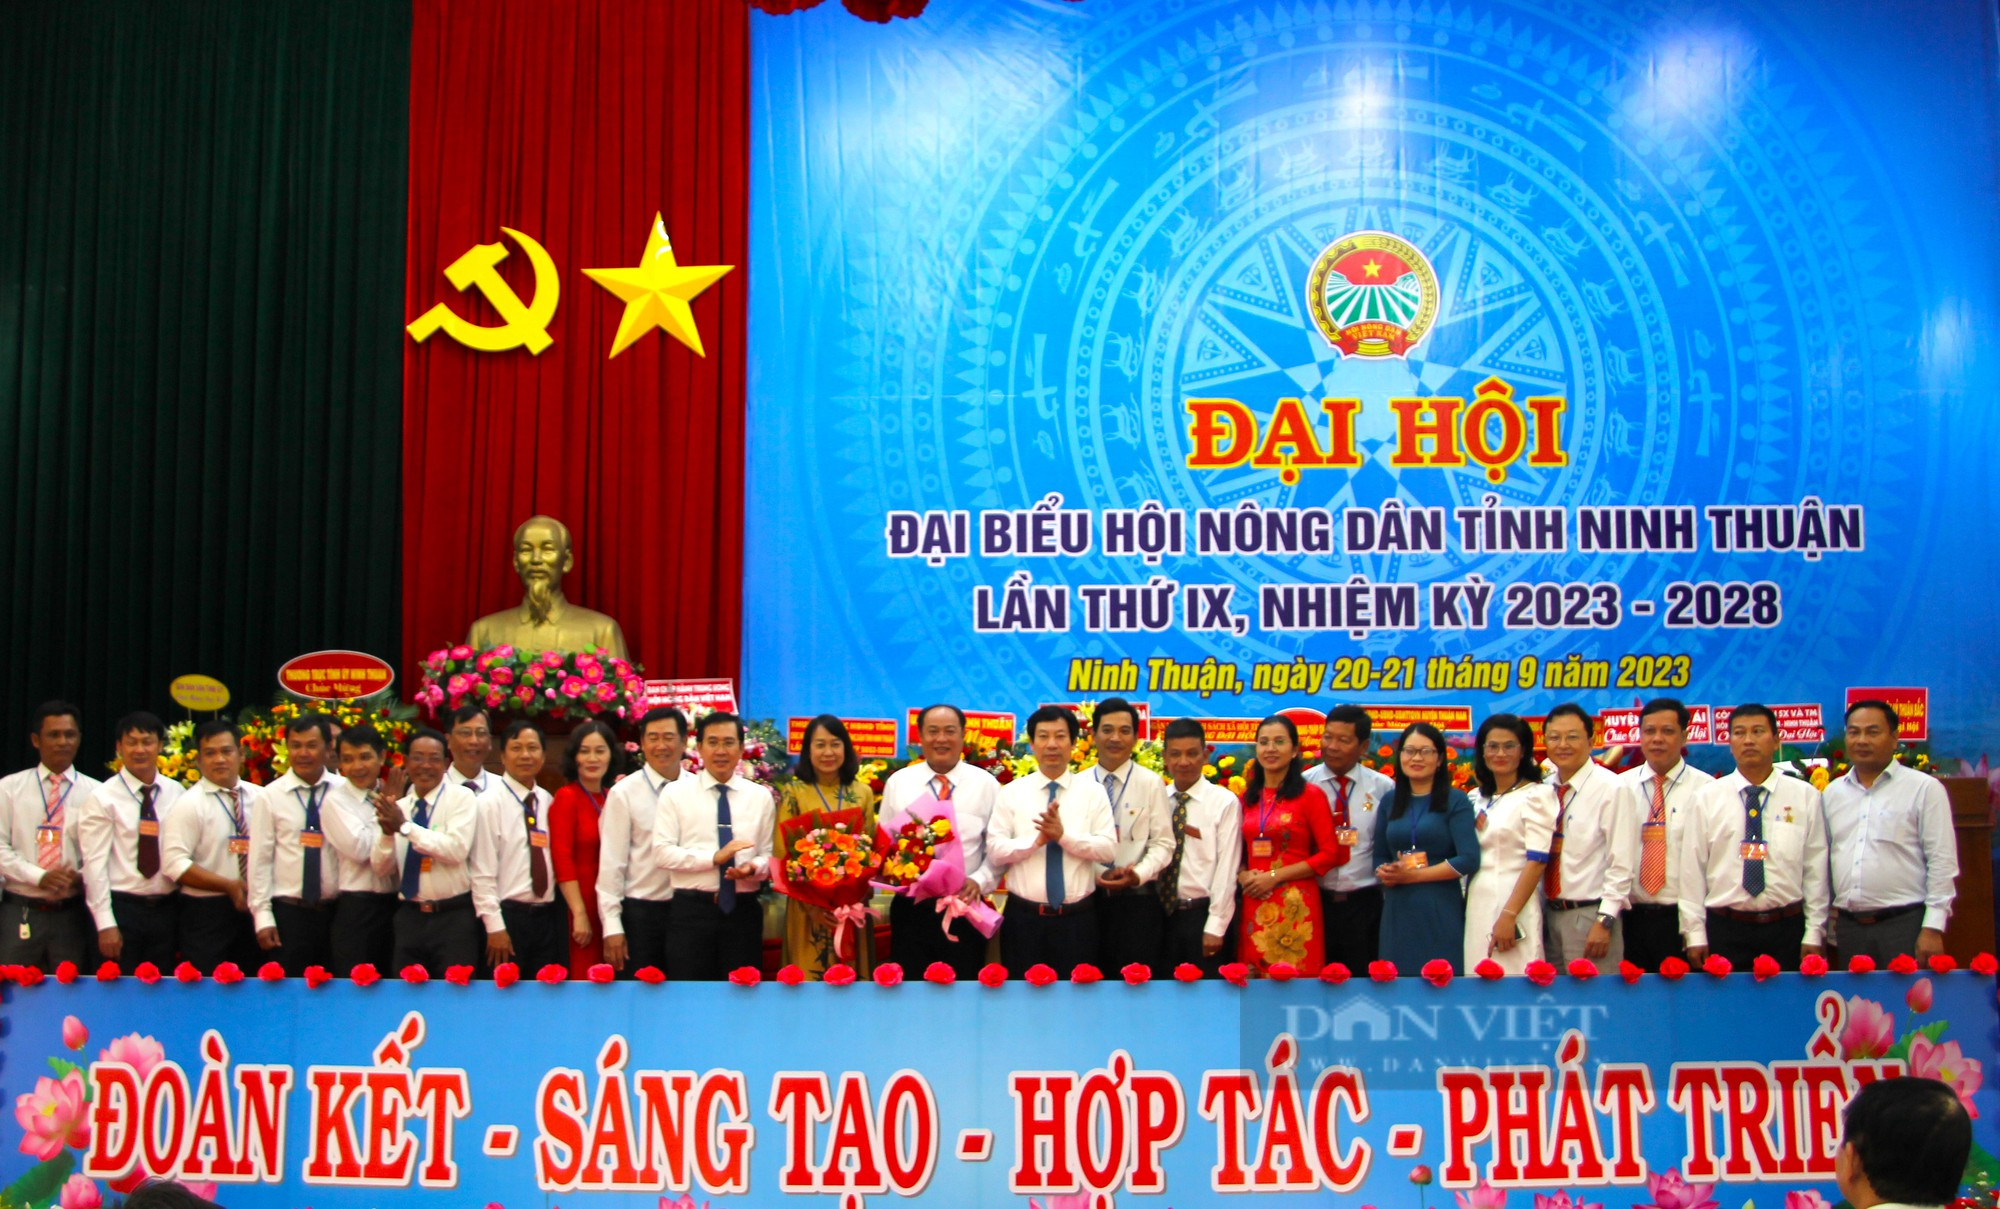 Phó chủ tịch Trung ương Hội Nguyễn Xuân Định nhấn mạnh 5 nhiệm vụ trọng tâm tại Đại hội Hội Nông dân tỉnh Ninh Thuận - Ảnh 9.